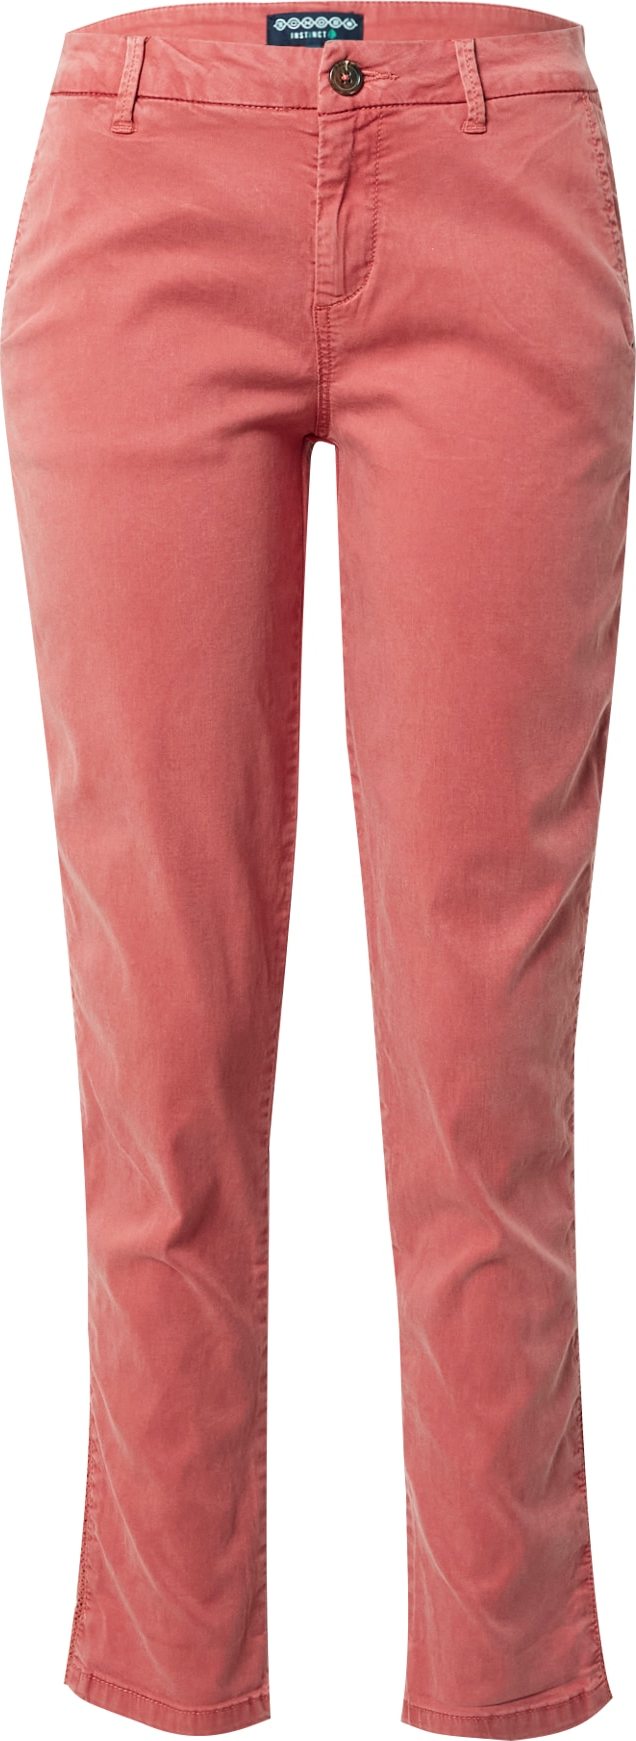 Chino kalhoty BONOBO pastelově červená